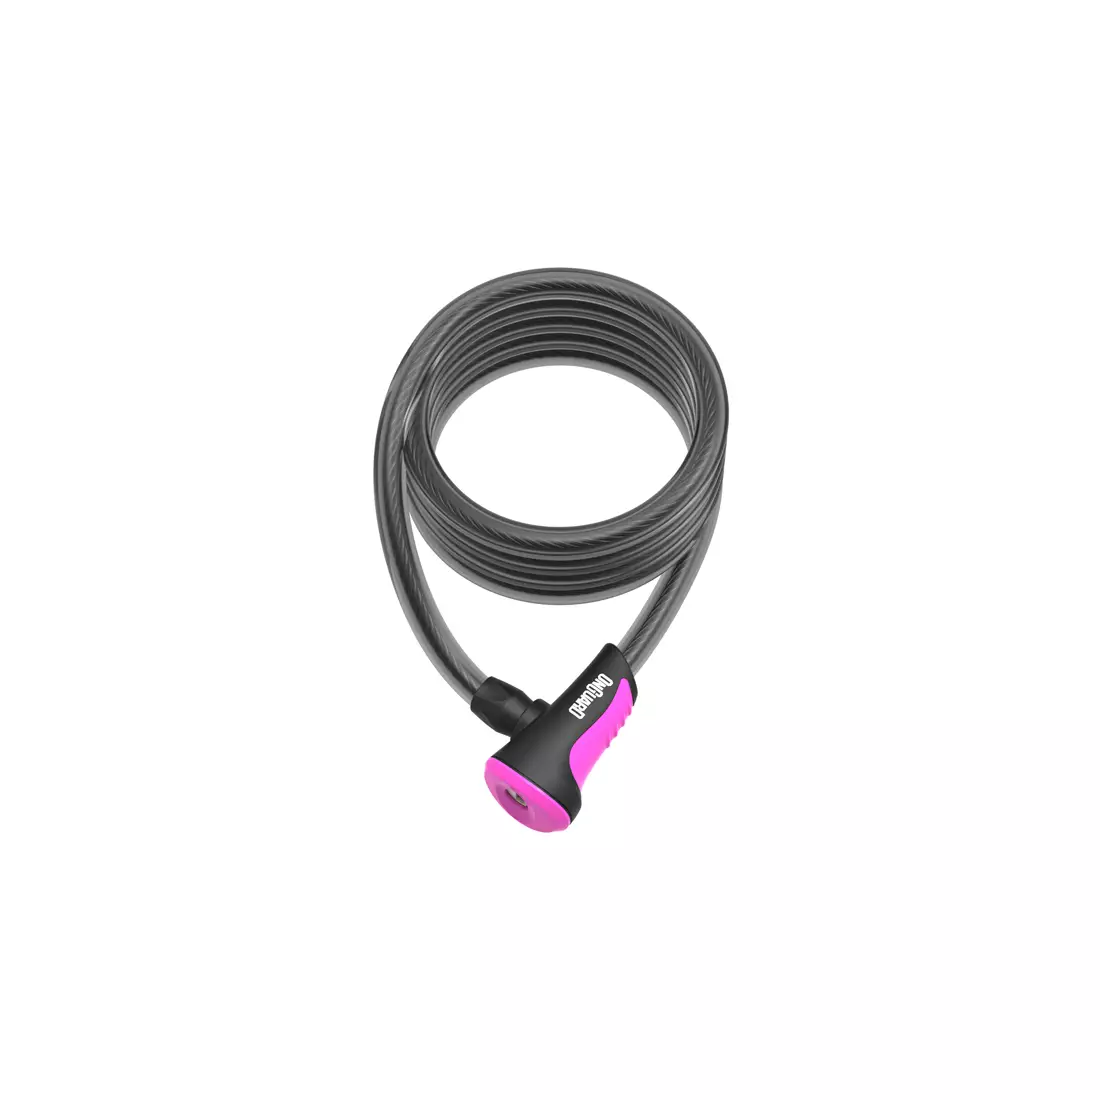 ONGUARD kerékpár csat neon linka 12mm 180cm + 2 x kulcsok kóddal pink ONG-8162PN